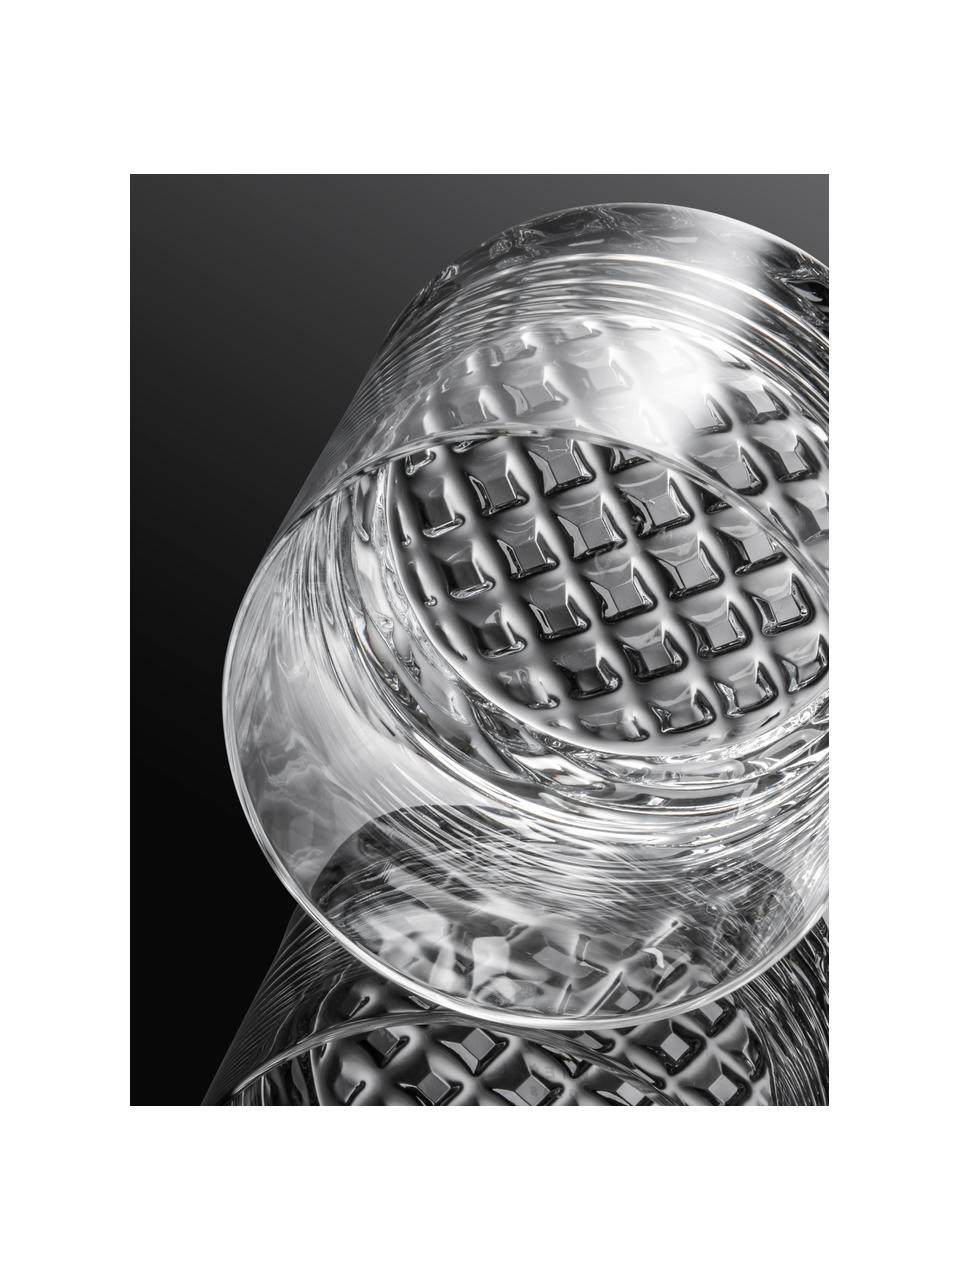 Kristall-Whiskygläser Chess, 4 Stück, Tritan-Kristallglas, Transparent, Ø 9 x H 9 cm, 400 ml